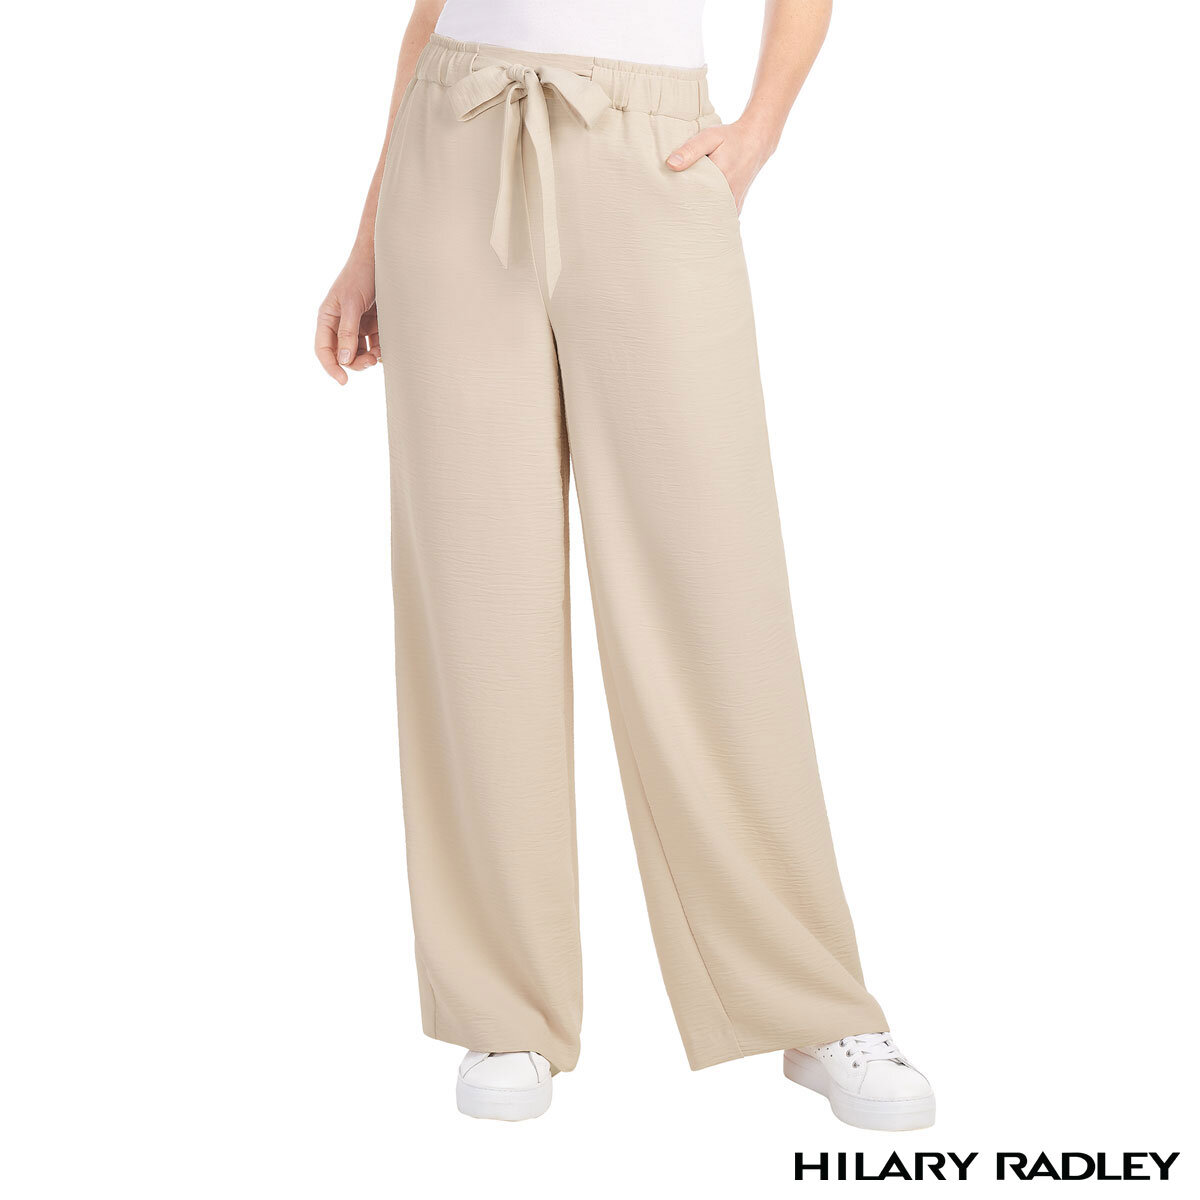 Hilary Radley Ladies Wide Leg Trousers in Oatmeal